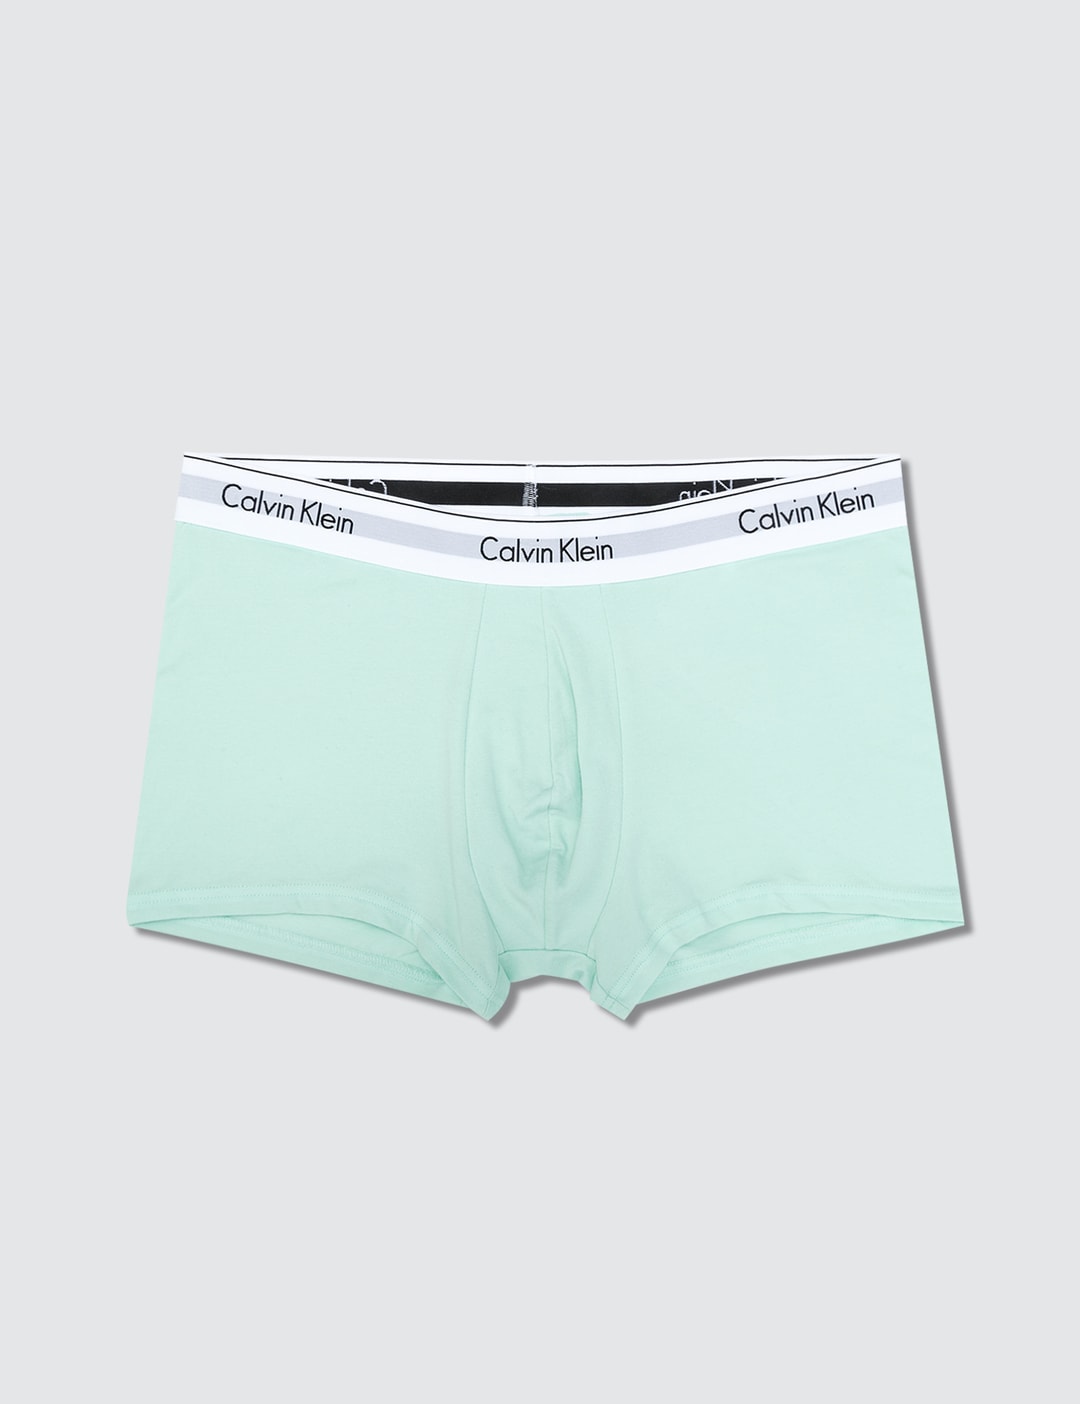 Calvin Klein Underwear - Modern Cotton Stretch Trunk (Pack of 2)